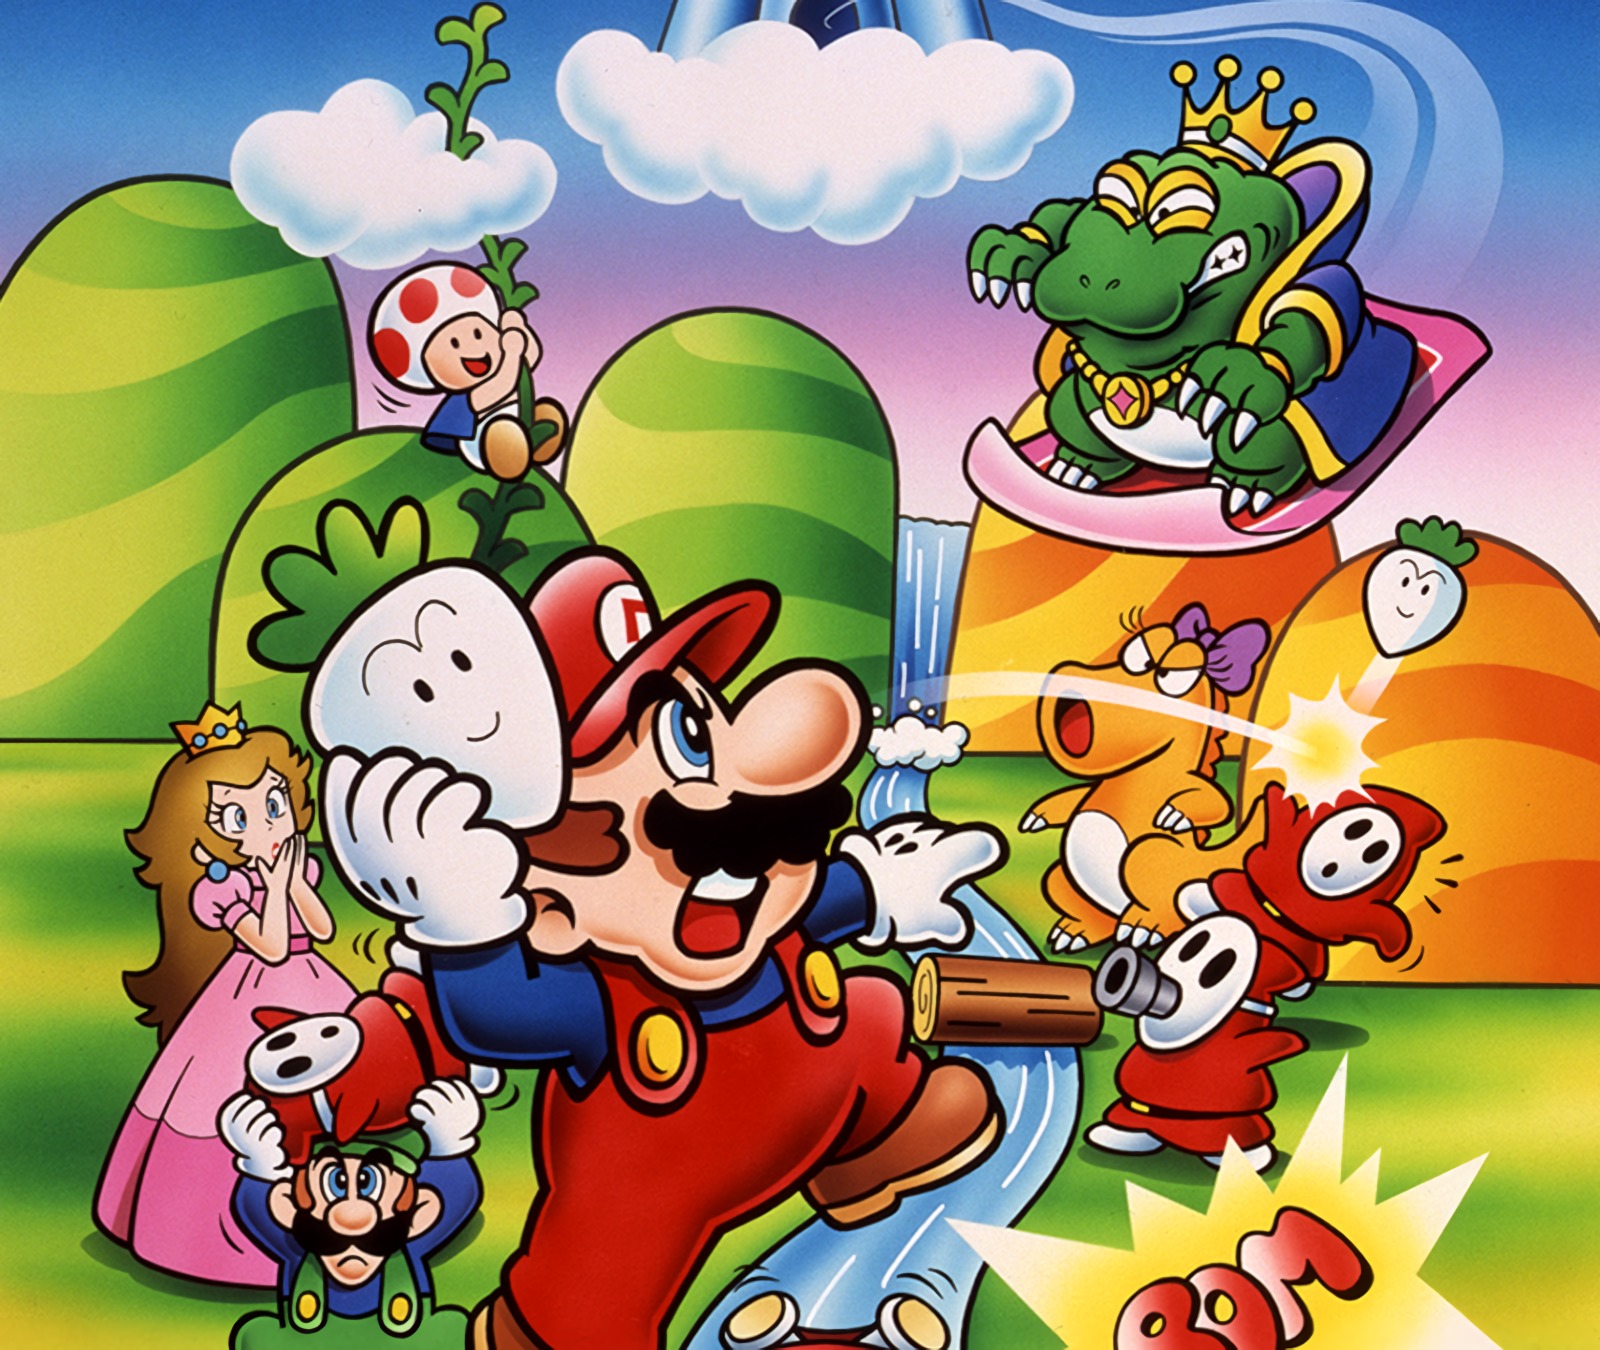 Super mario bros. Super Mario Bros. 2. Супер Марио БРОС. Super Mario 2 NES. Супер Марио БРОС Марио.